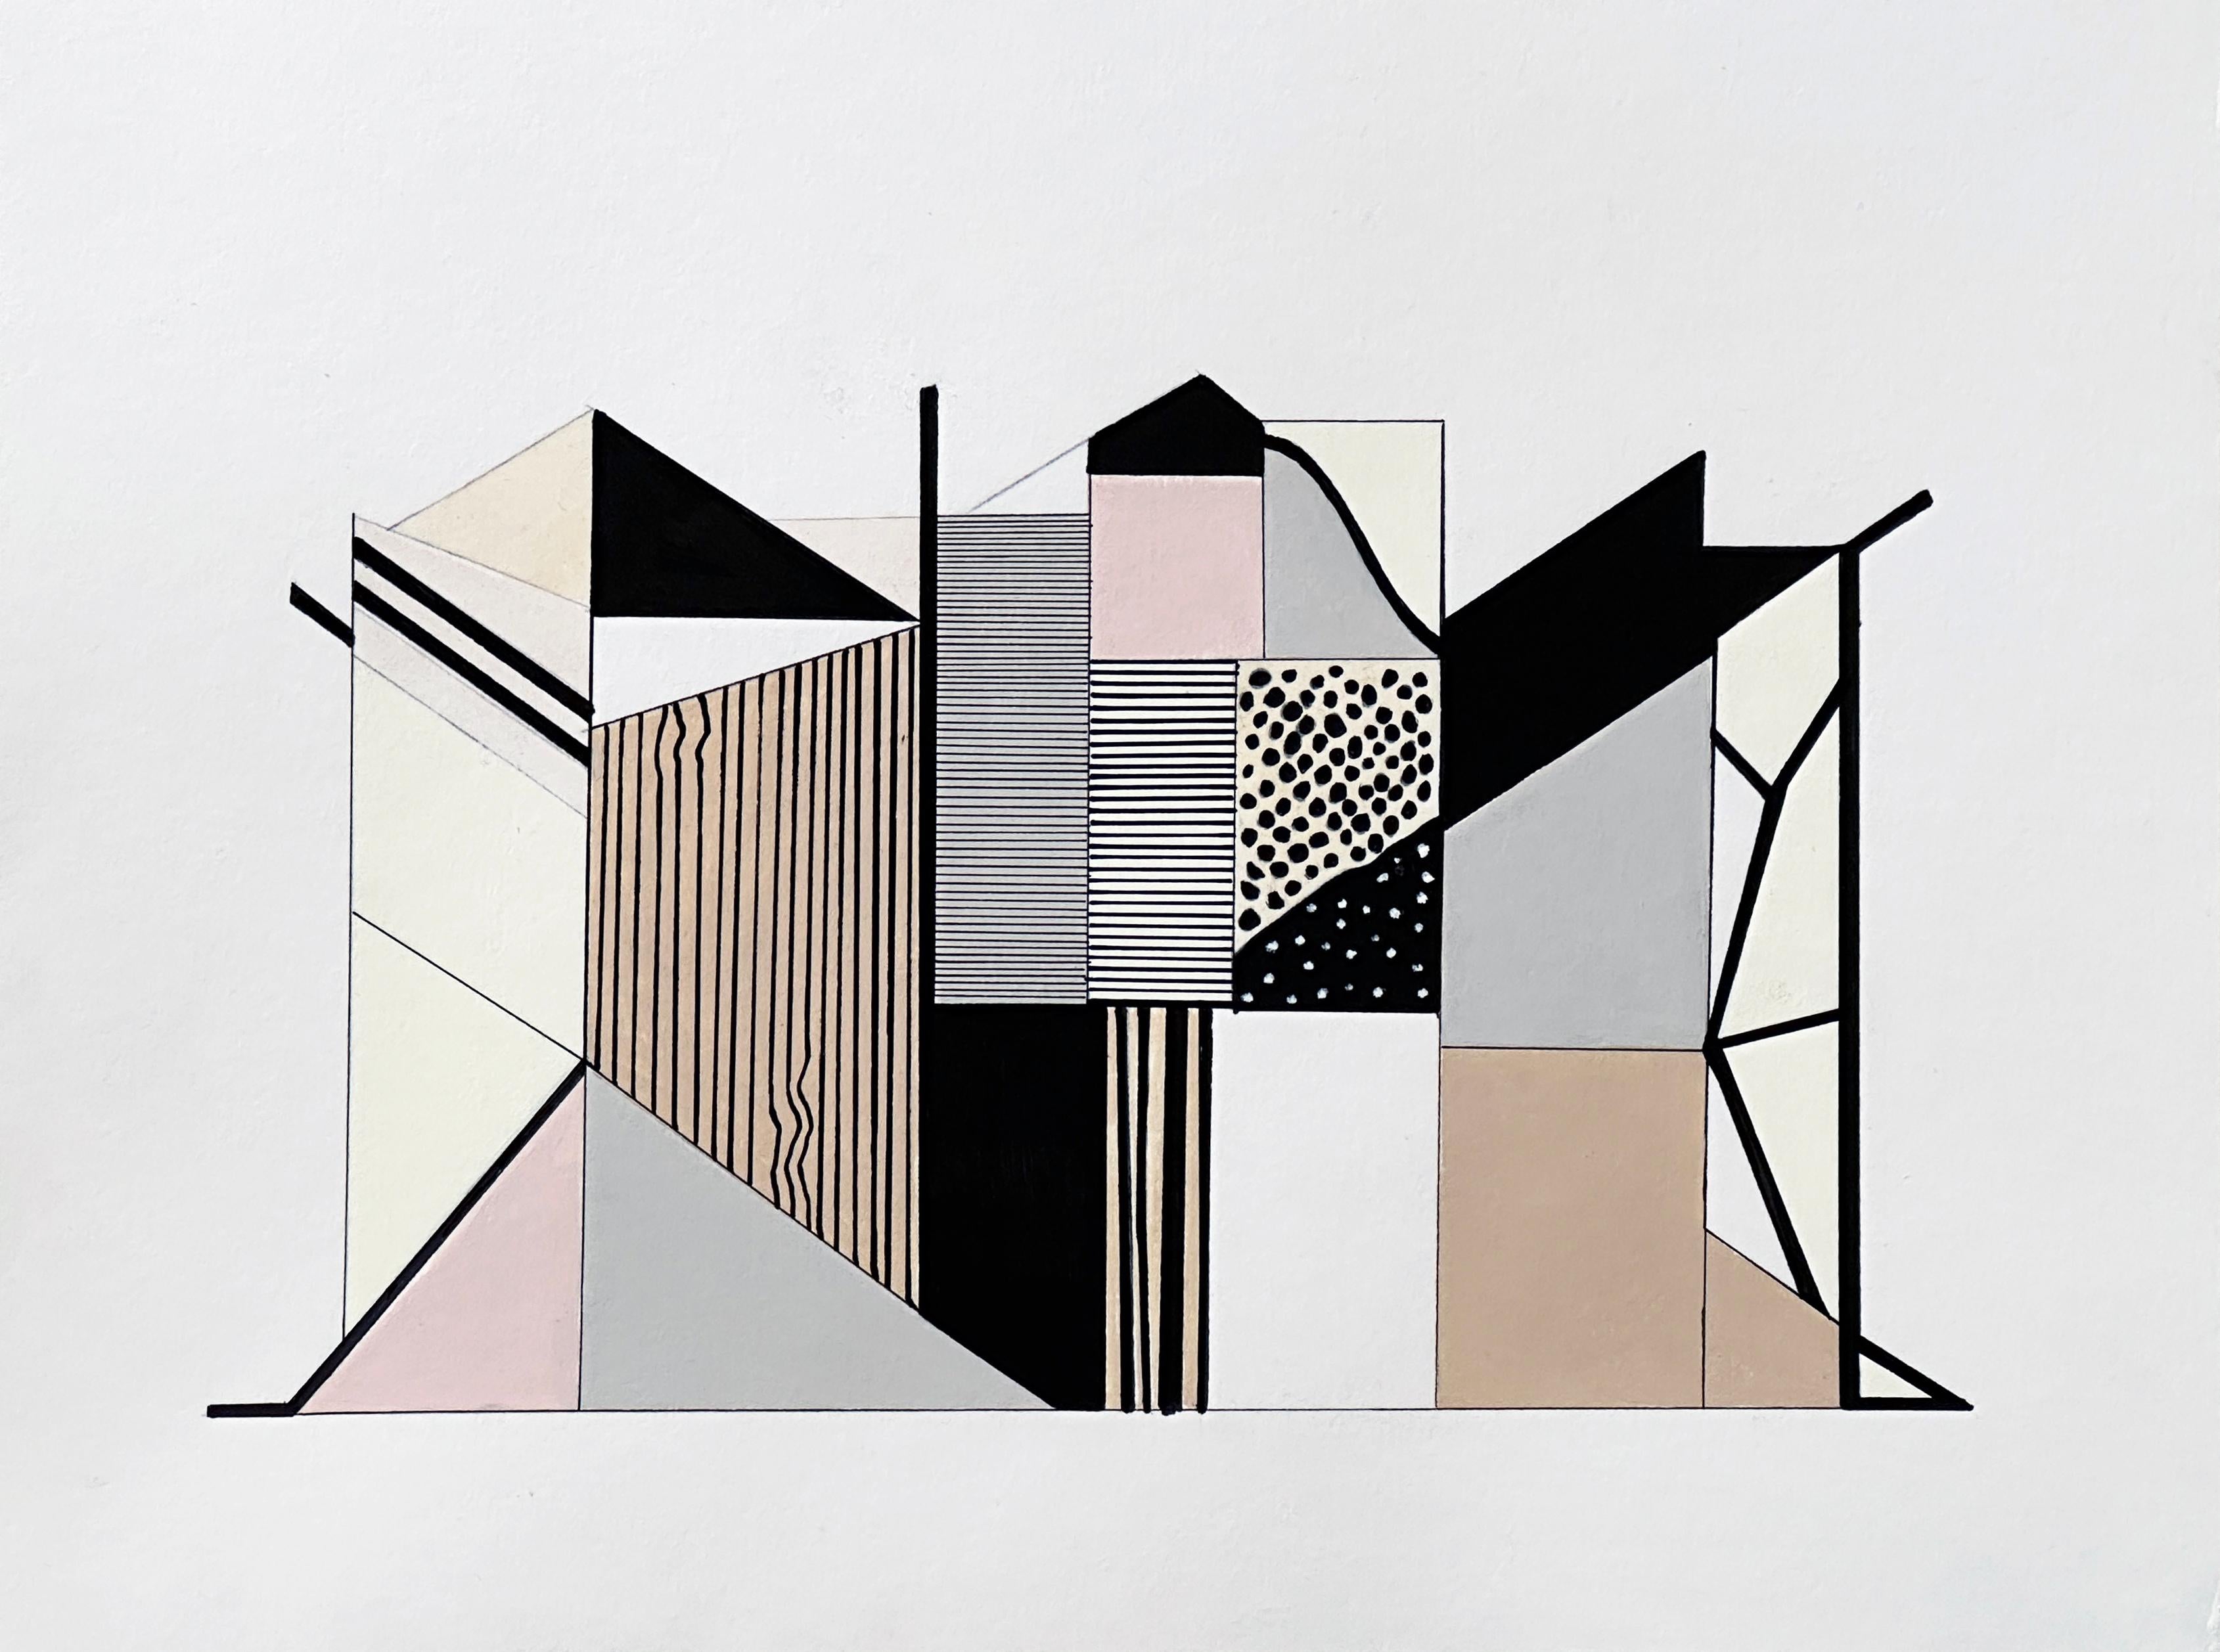 Amanda Andersen Abstract Painting – "Edifice I" Zeitgenössische Zeichnung, abstrakte Geometrie, natürliche Architektur